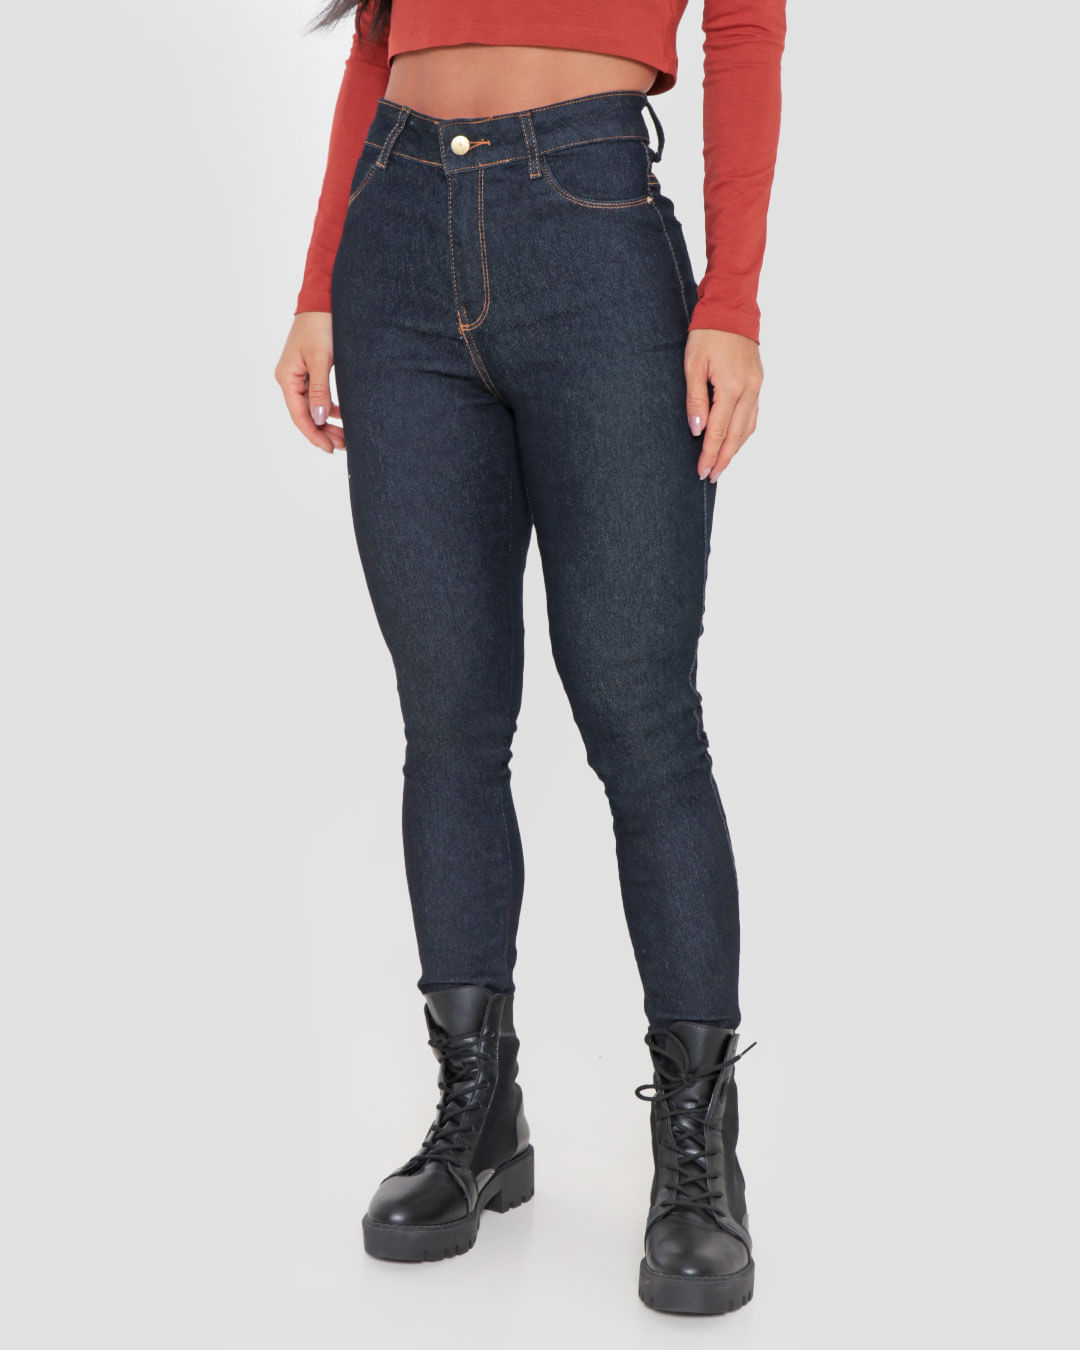 Calça Feminina Jeans Azu Marinhol Metal Estampa - Compre Agora Online